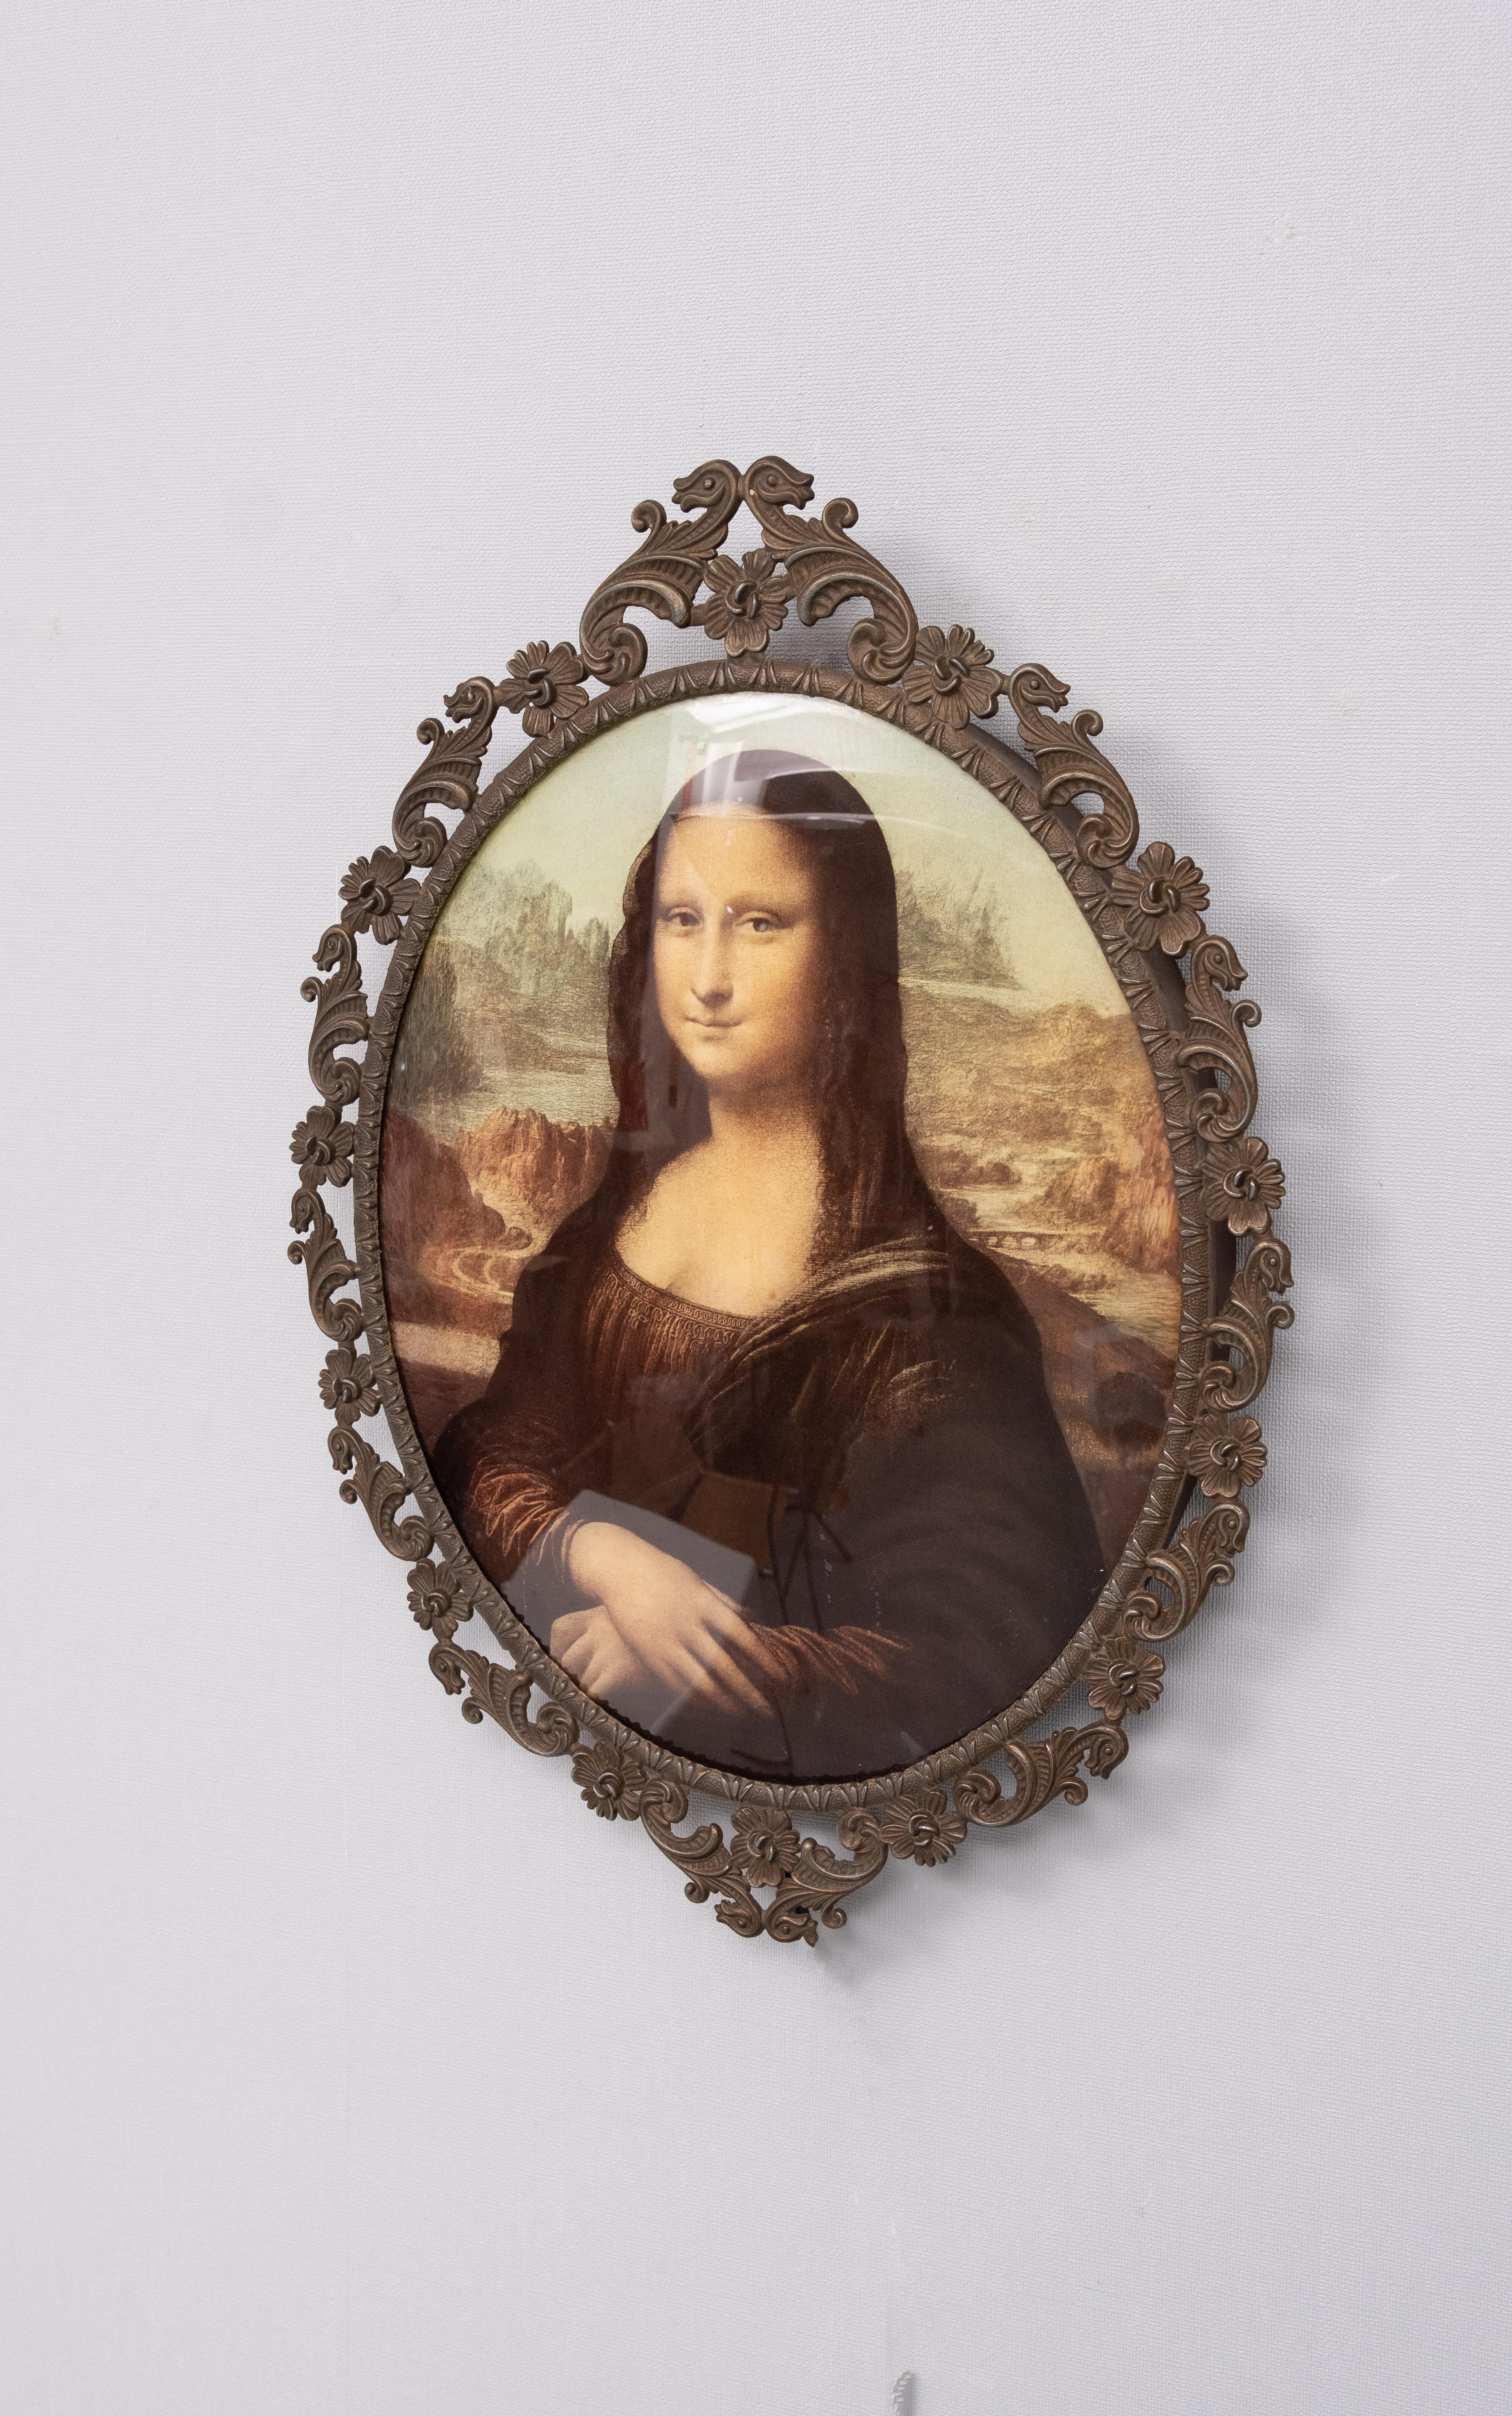 Dieses ovale Acrylbild der Mona Lisa bringt mich zum Lächeln.
Schöner Effekt, wenn das Gegenlicht an ist, kommt in einem Messingrahmen. 
Wenn Sie das für Kitsch halten  Sie haben Recht.  Typischer italienischer Touristenkitsch der 1970er Jahre.  